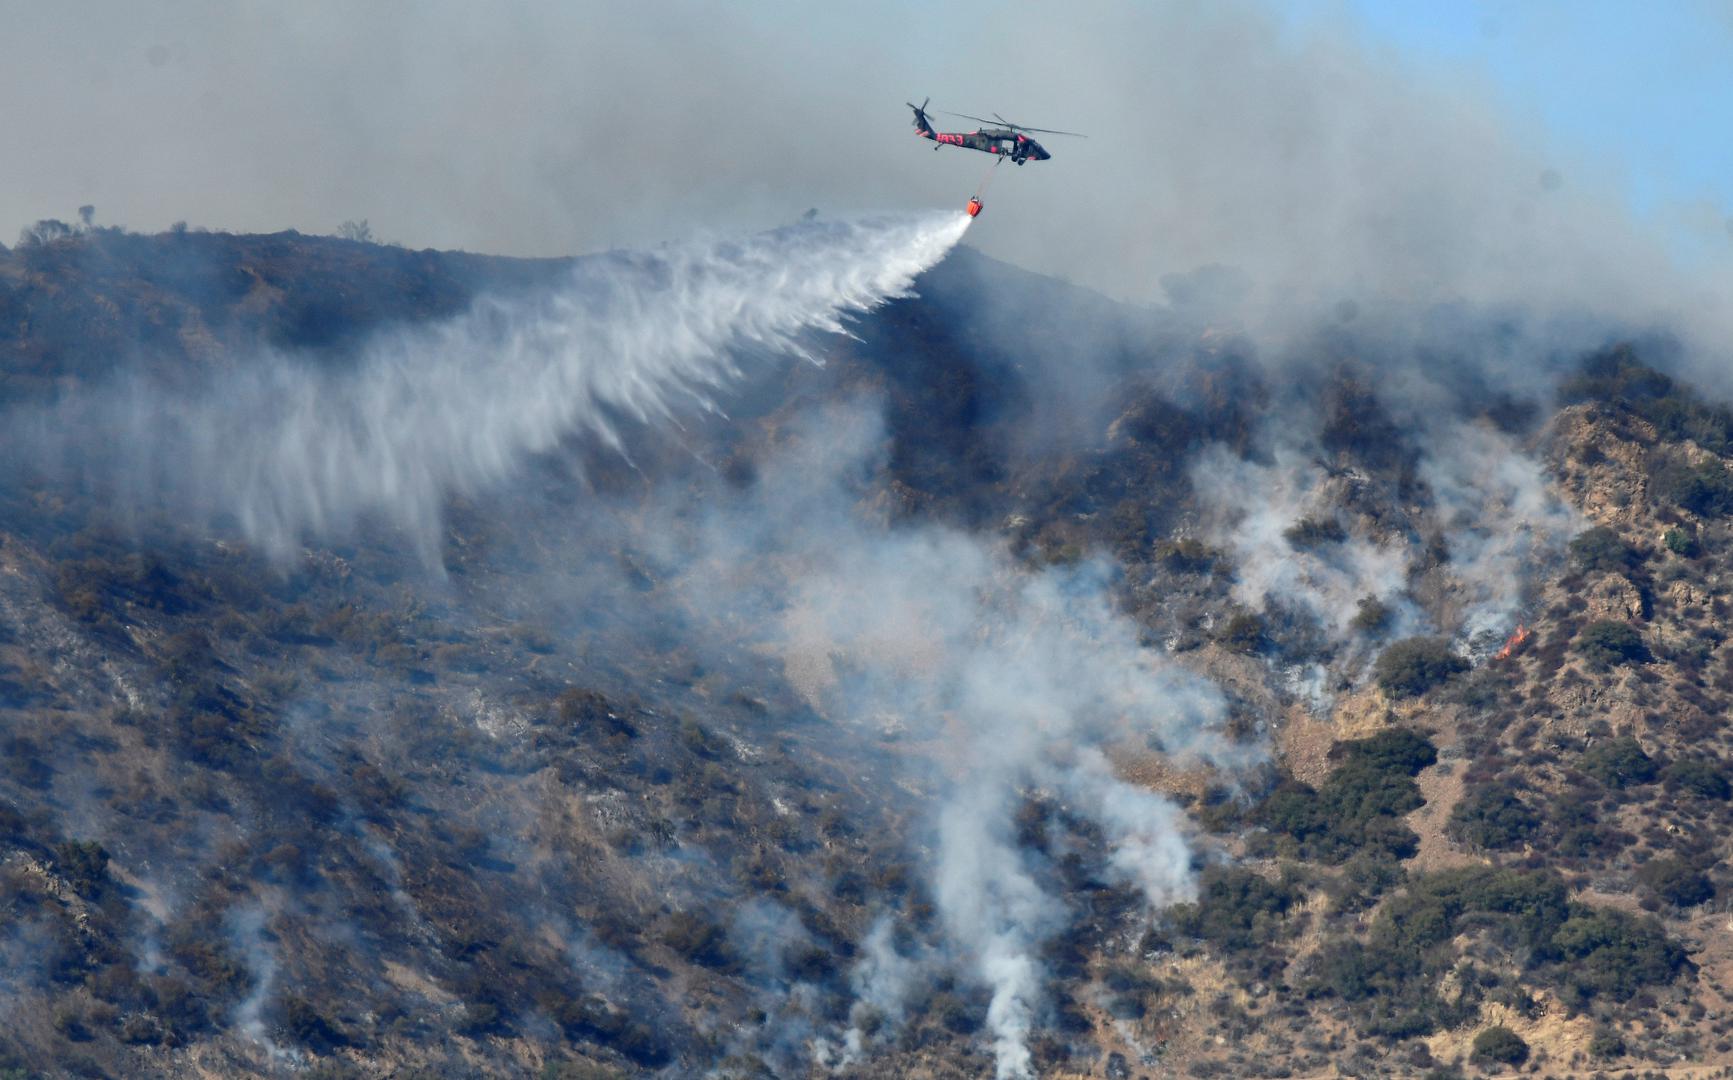 Požar Thomas već je spalio 105.000 hektara, uništeno je 1000 objekata, a materijalna šteta pričinjena od 4. prosinca penje se na 104 milijuna dolara, izvijestila je u subotu kalifornijska vatrogasna služba Calfire.